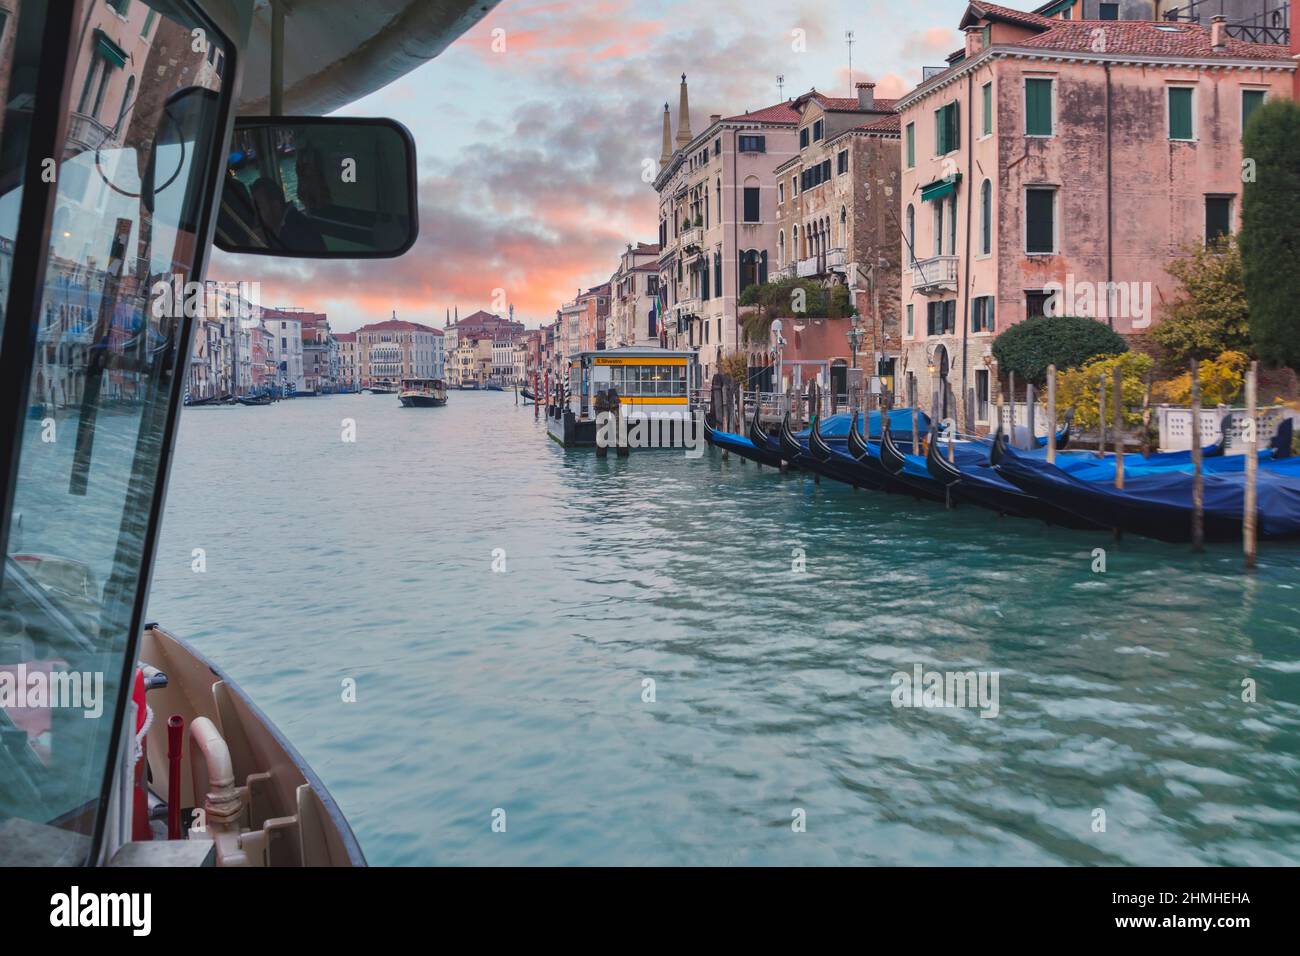 Italien, Venetien, Venedig, venezianische Gondeln und Paläste mit Blick auf den Canale Grande, Blick von einem Vaporetto in der Navigation Stockfoto